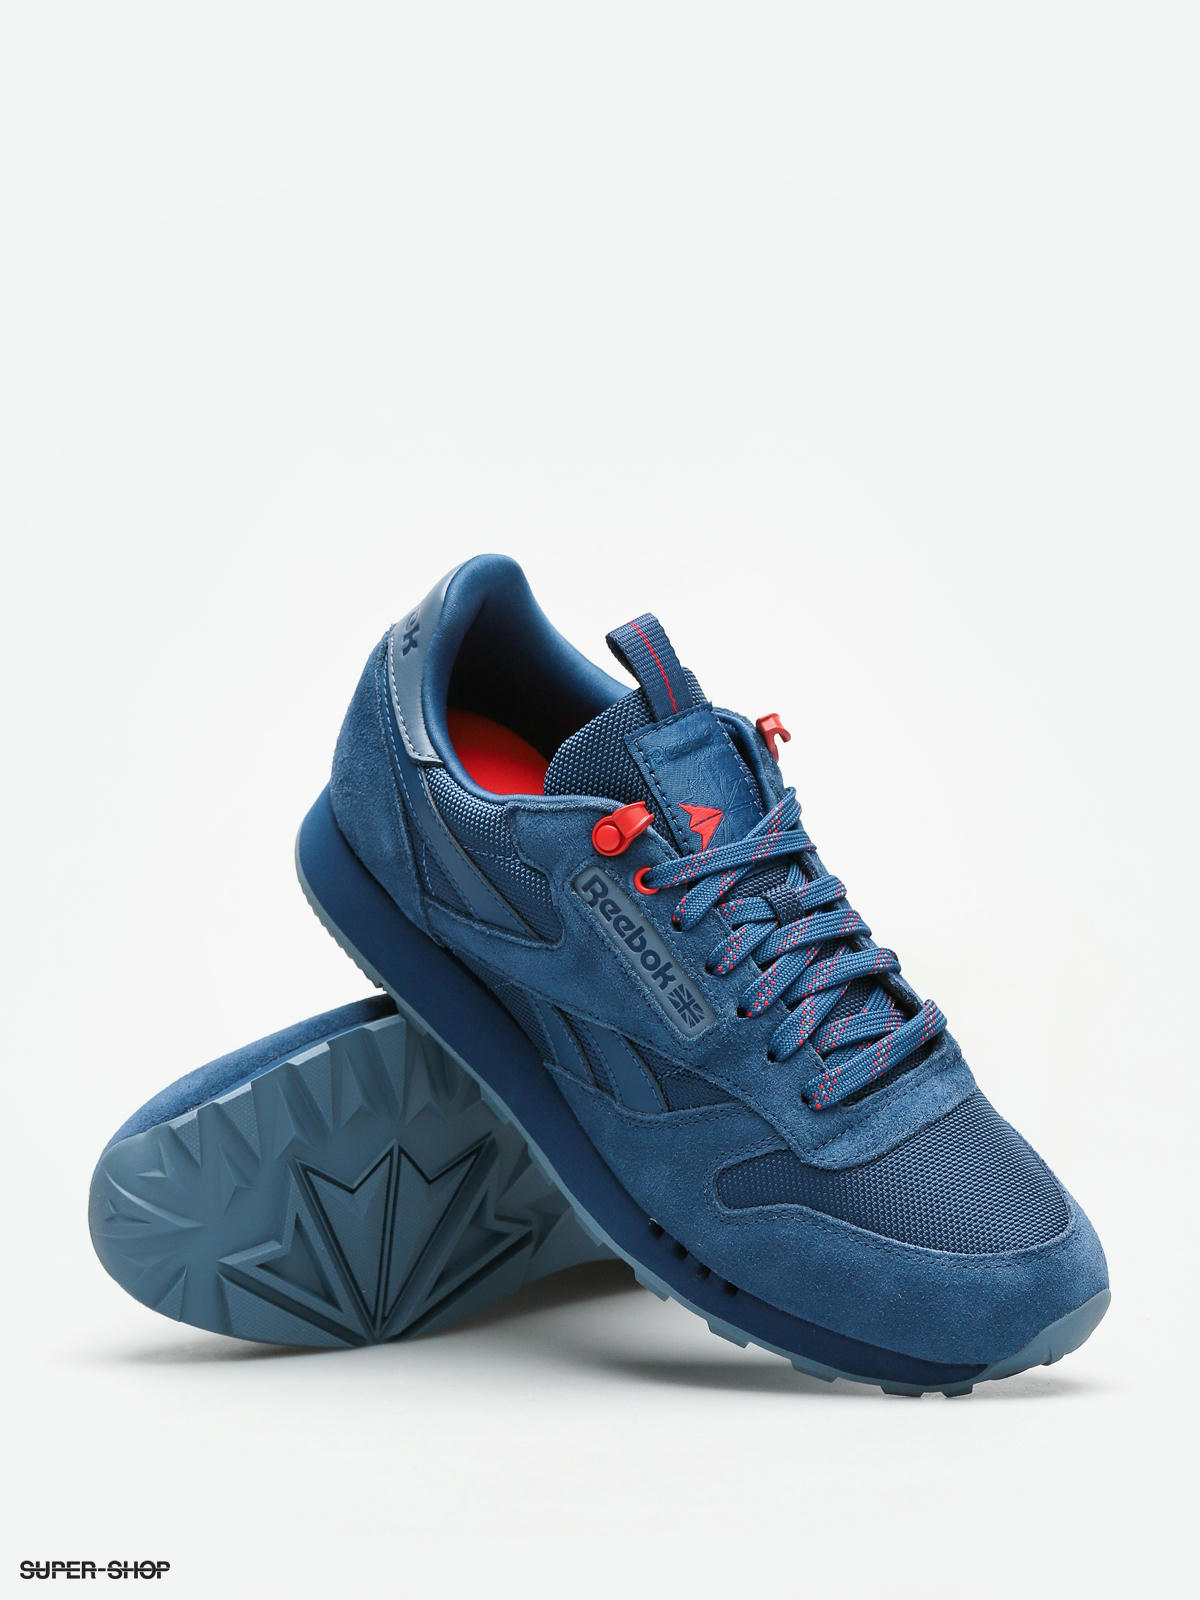 Reebok Shoes Cl Explore blue/blue red)